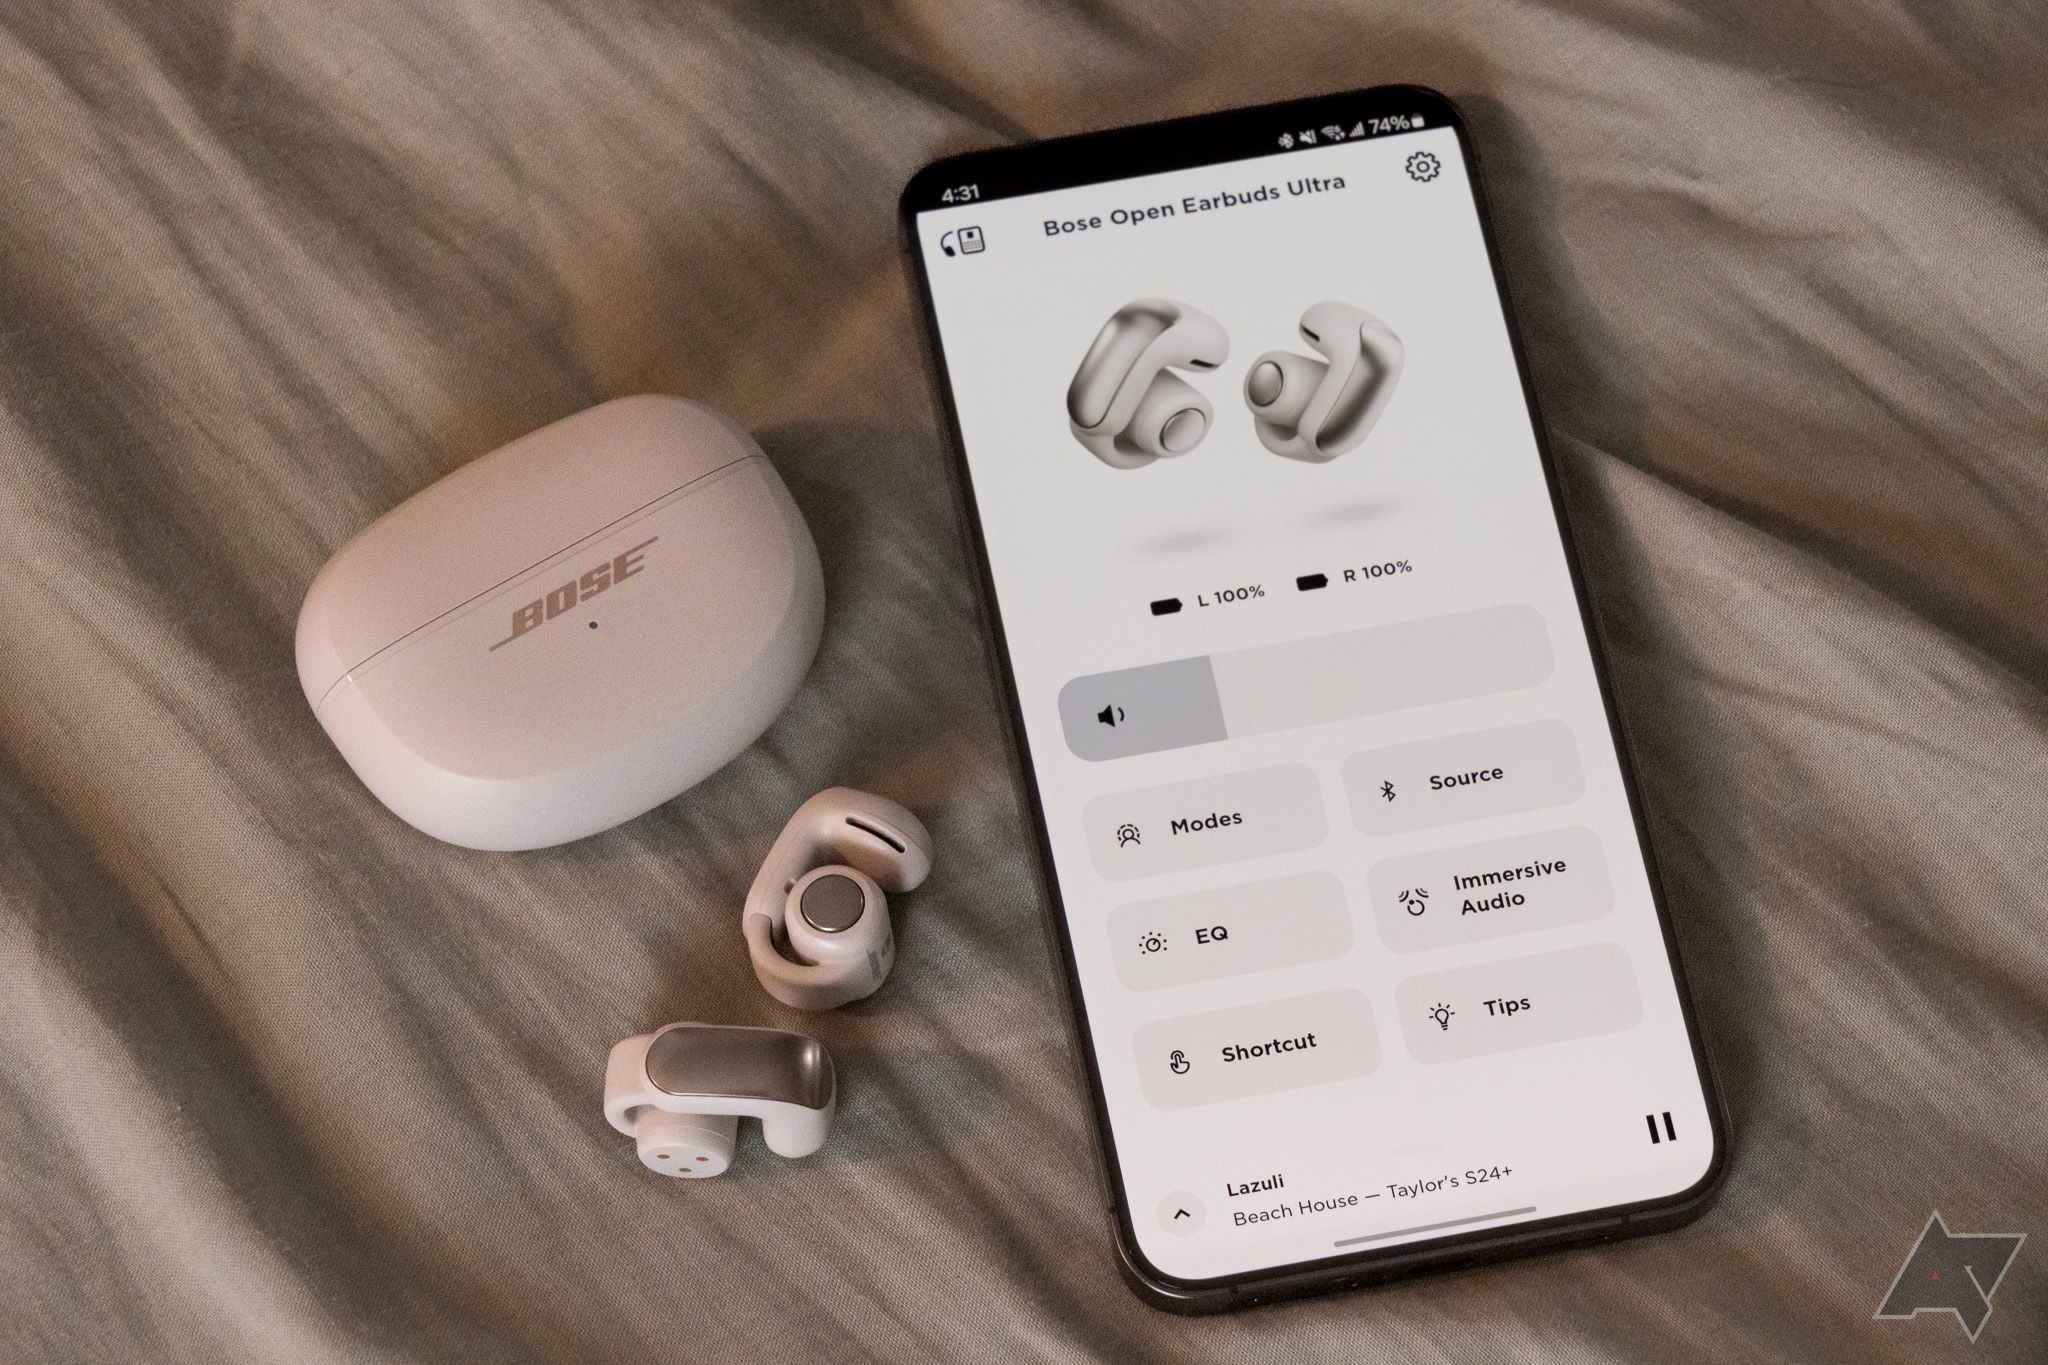 Os fones de ouvido Bose Ultra Open ao lado de um smartphone executando o aplicativo Bose Music